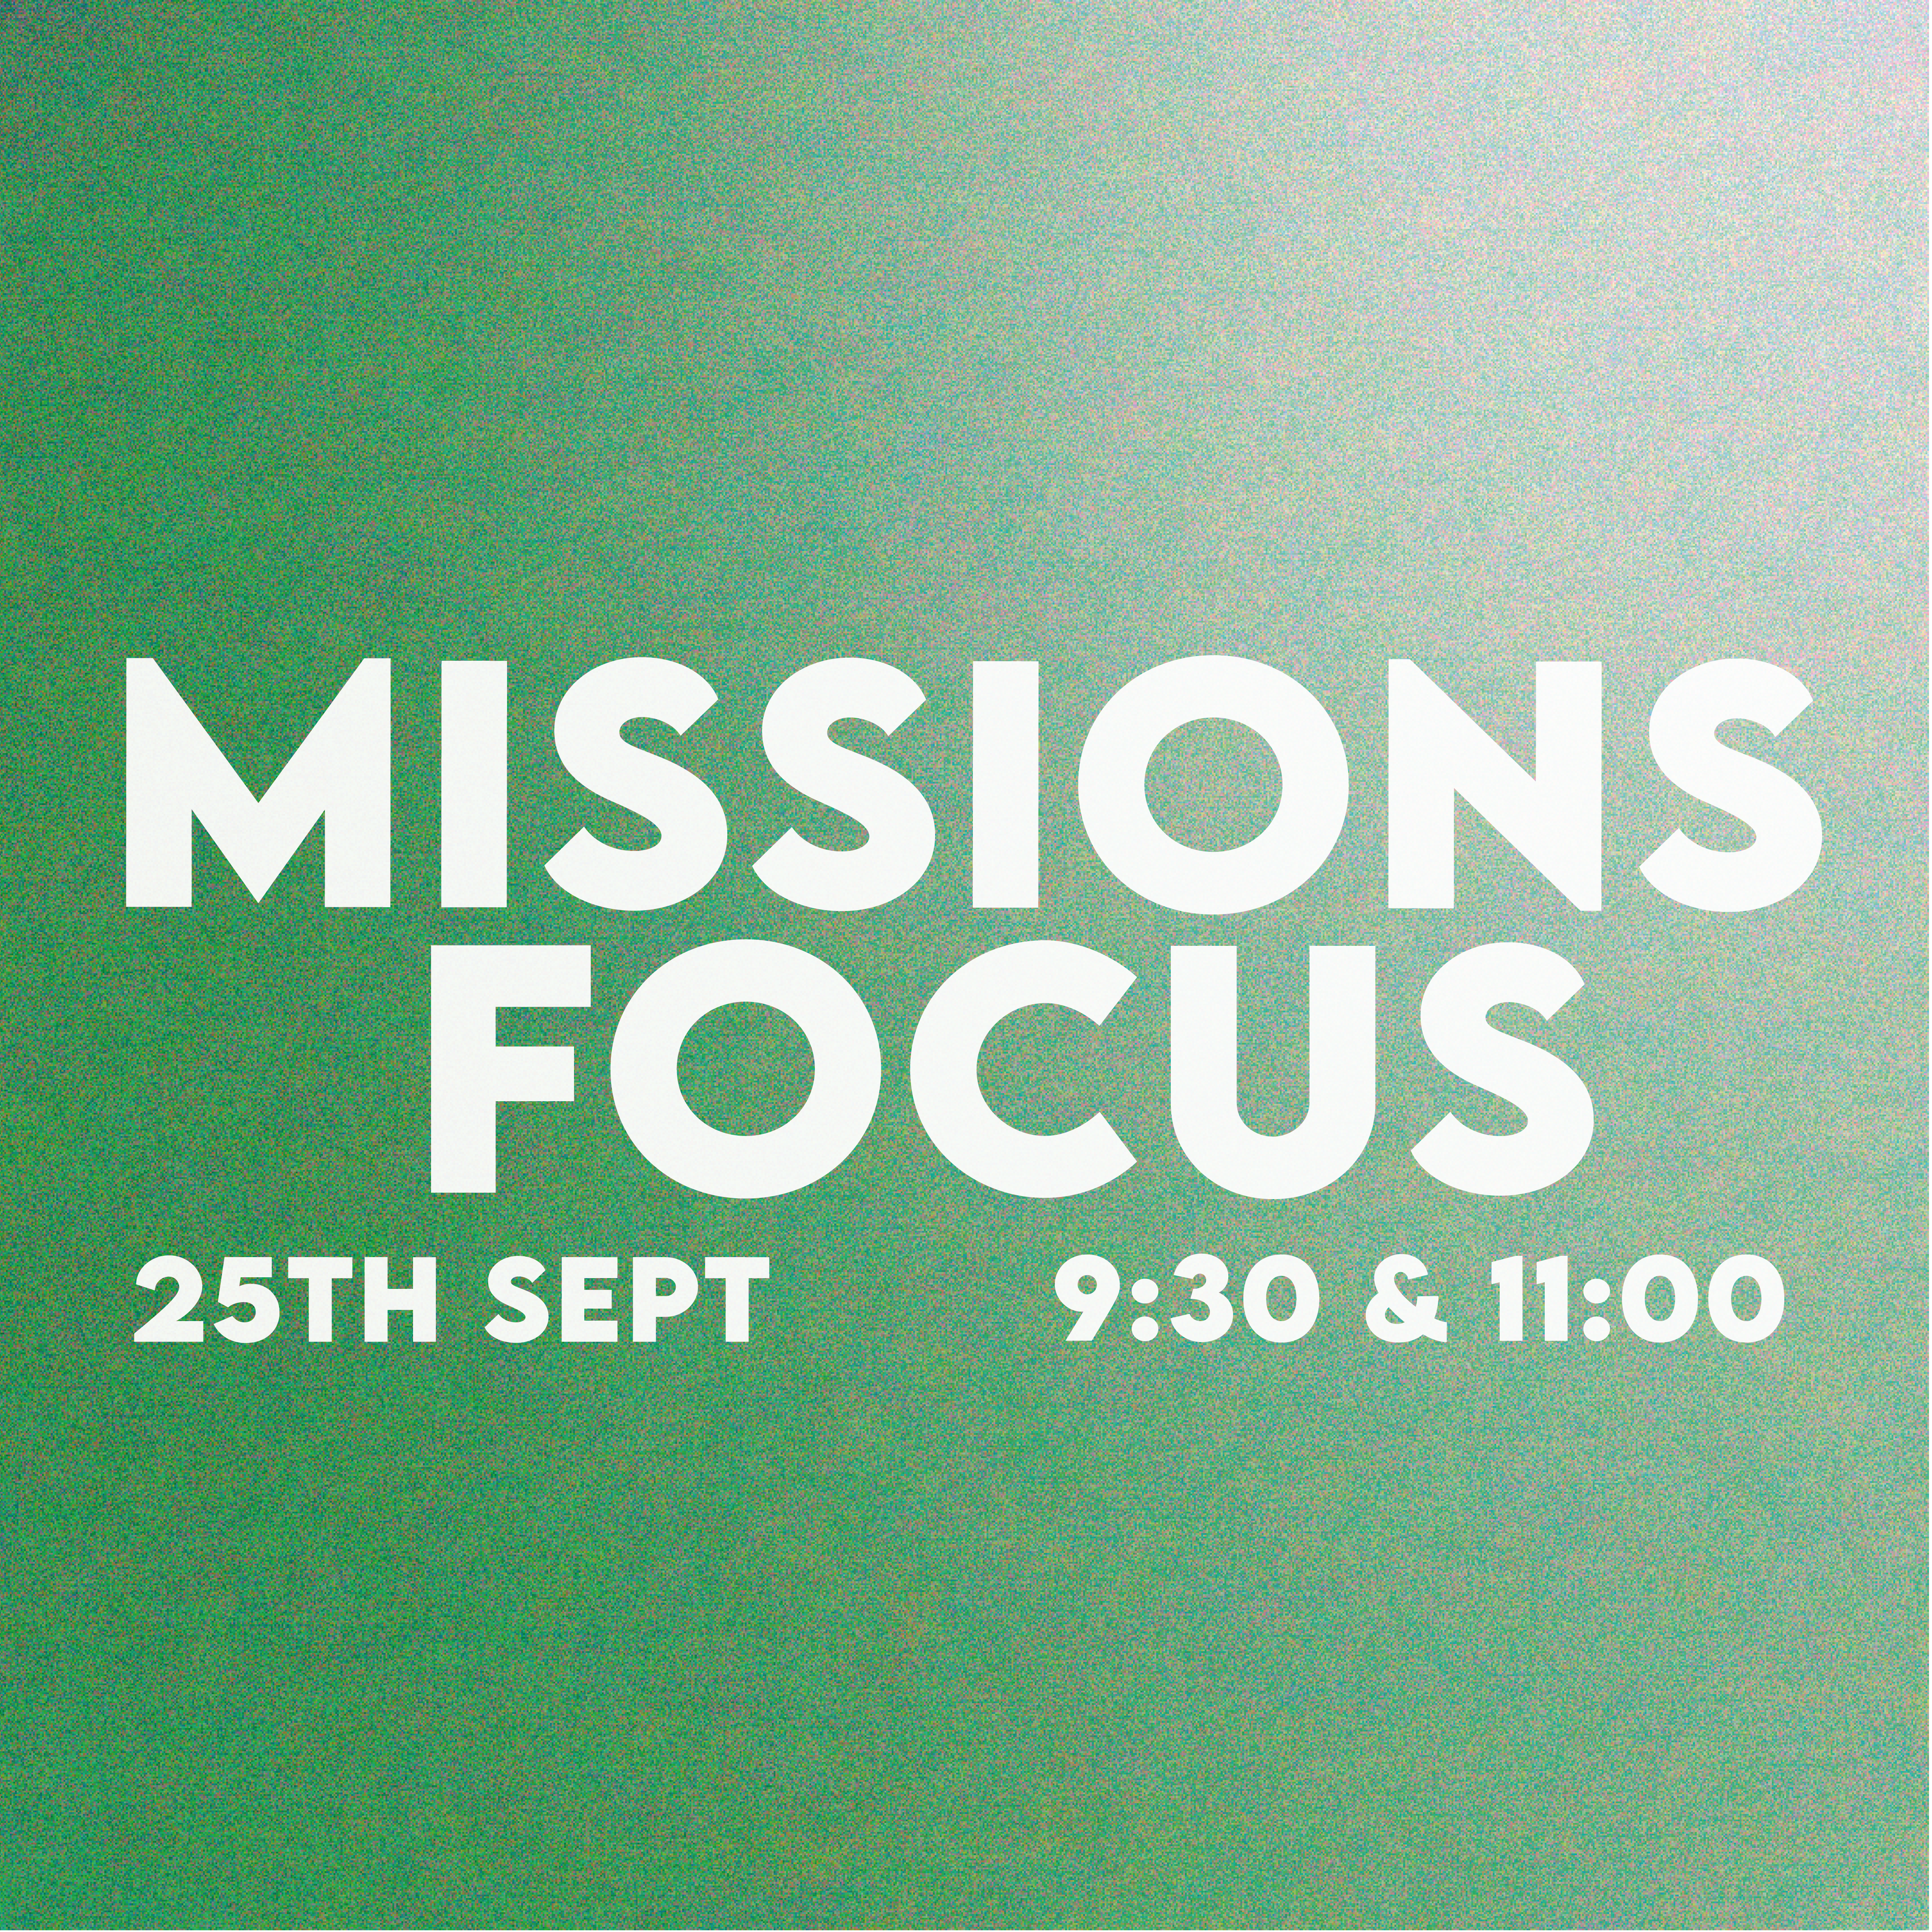 Mission Focus